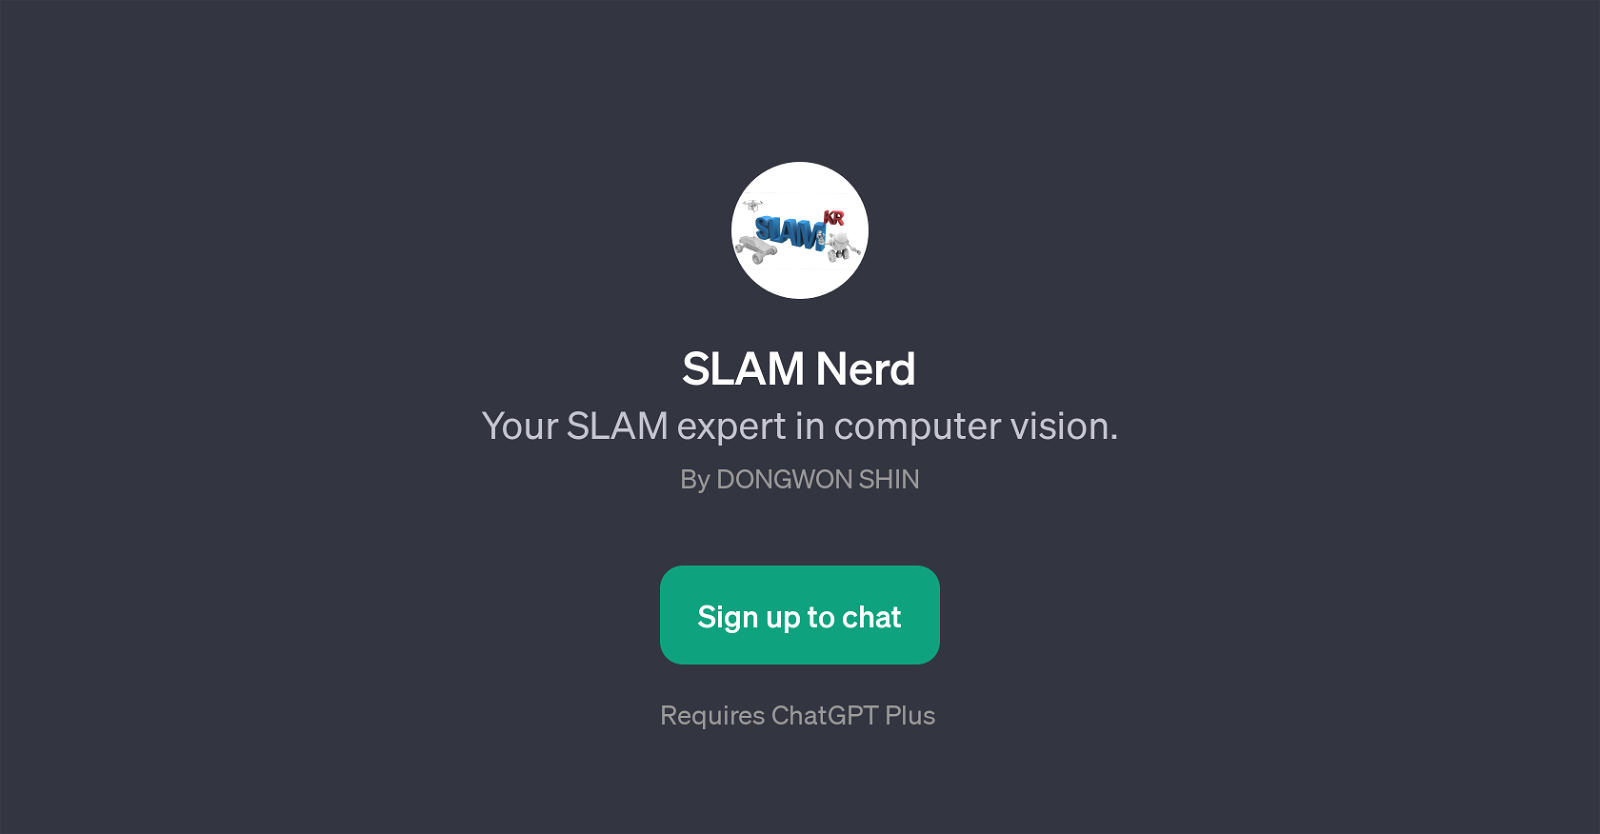 SLAM Nerd website